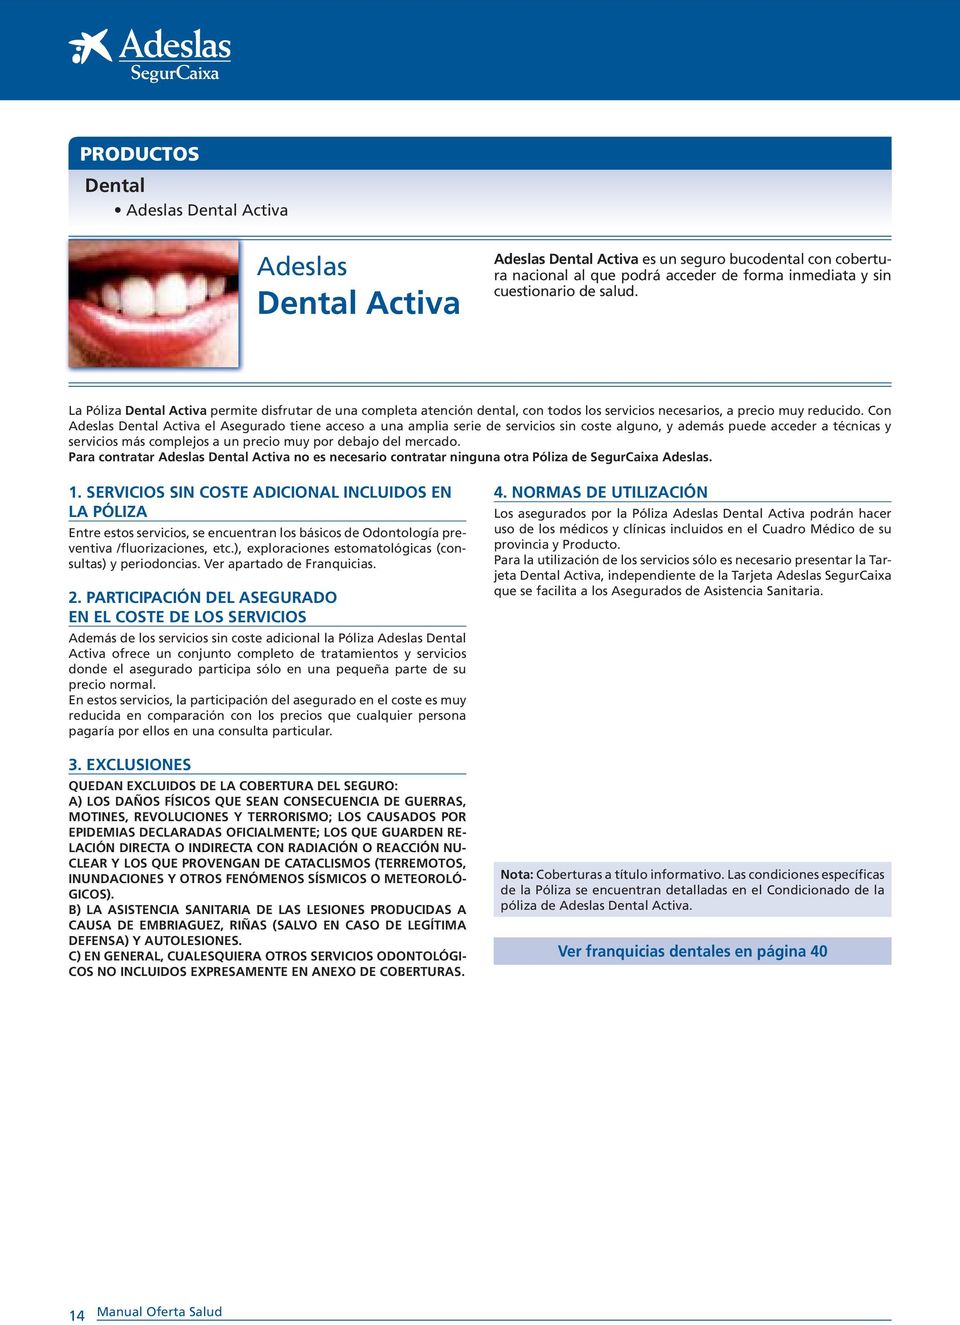 Con Adeslas Dental Activa el Asegurado tiene acceso a una amplia serie de servicios sin coste alguno, y además puede acceder a técnicas y servicios más complejos a un precio muy por debajo del